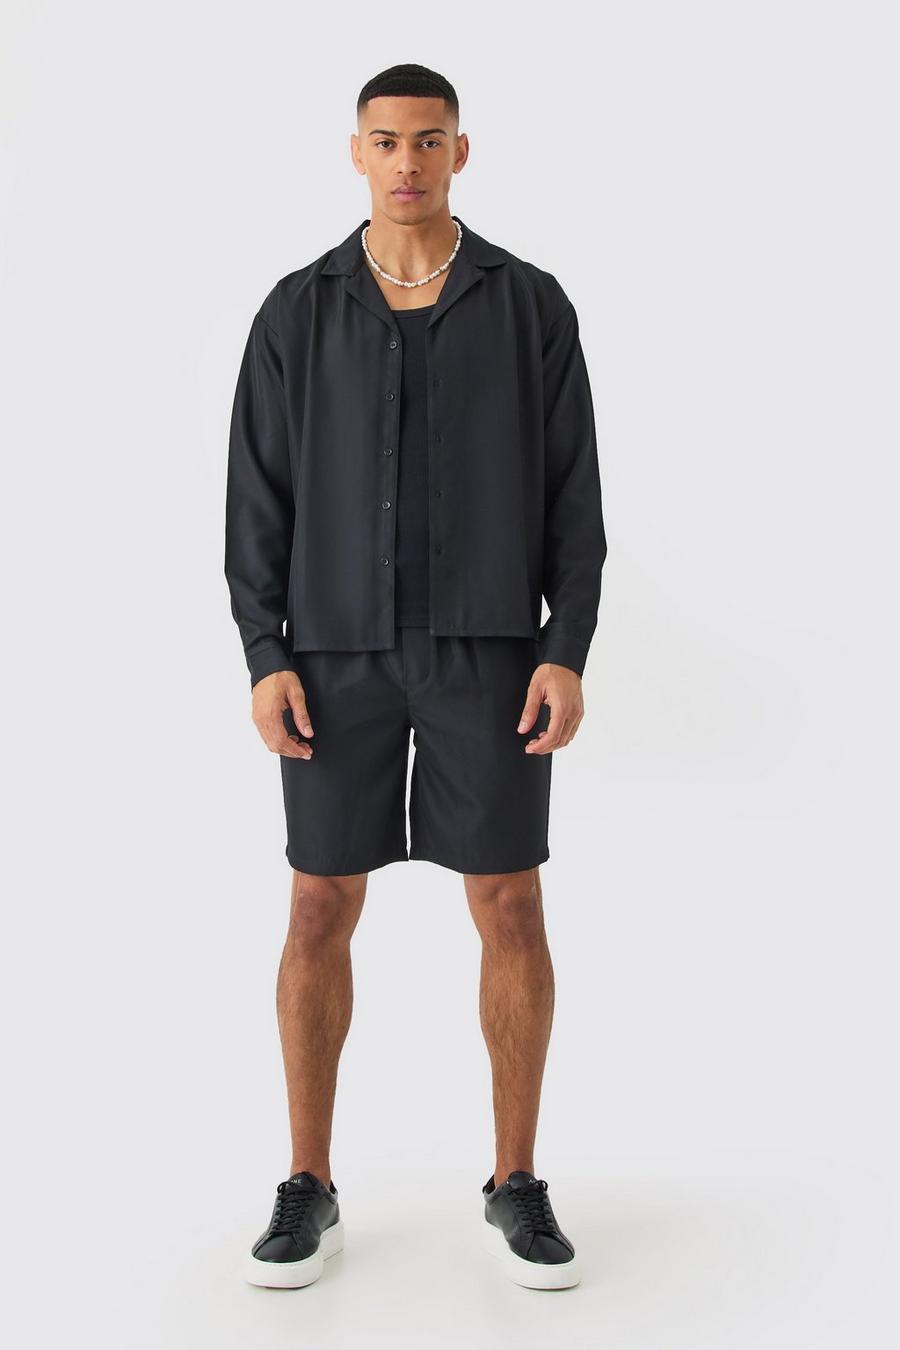 Black Zacht Boxy Keperstof Overhemd En Shorts